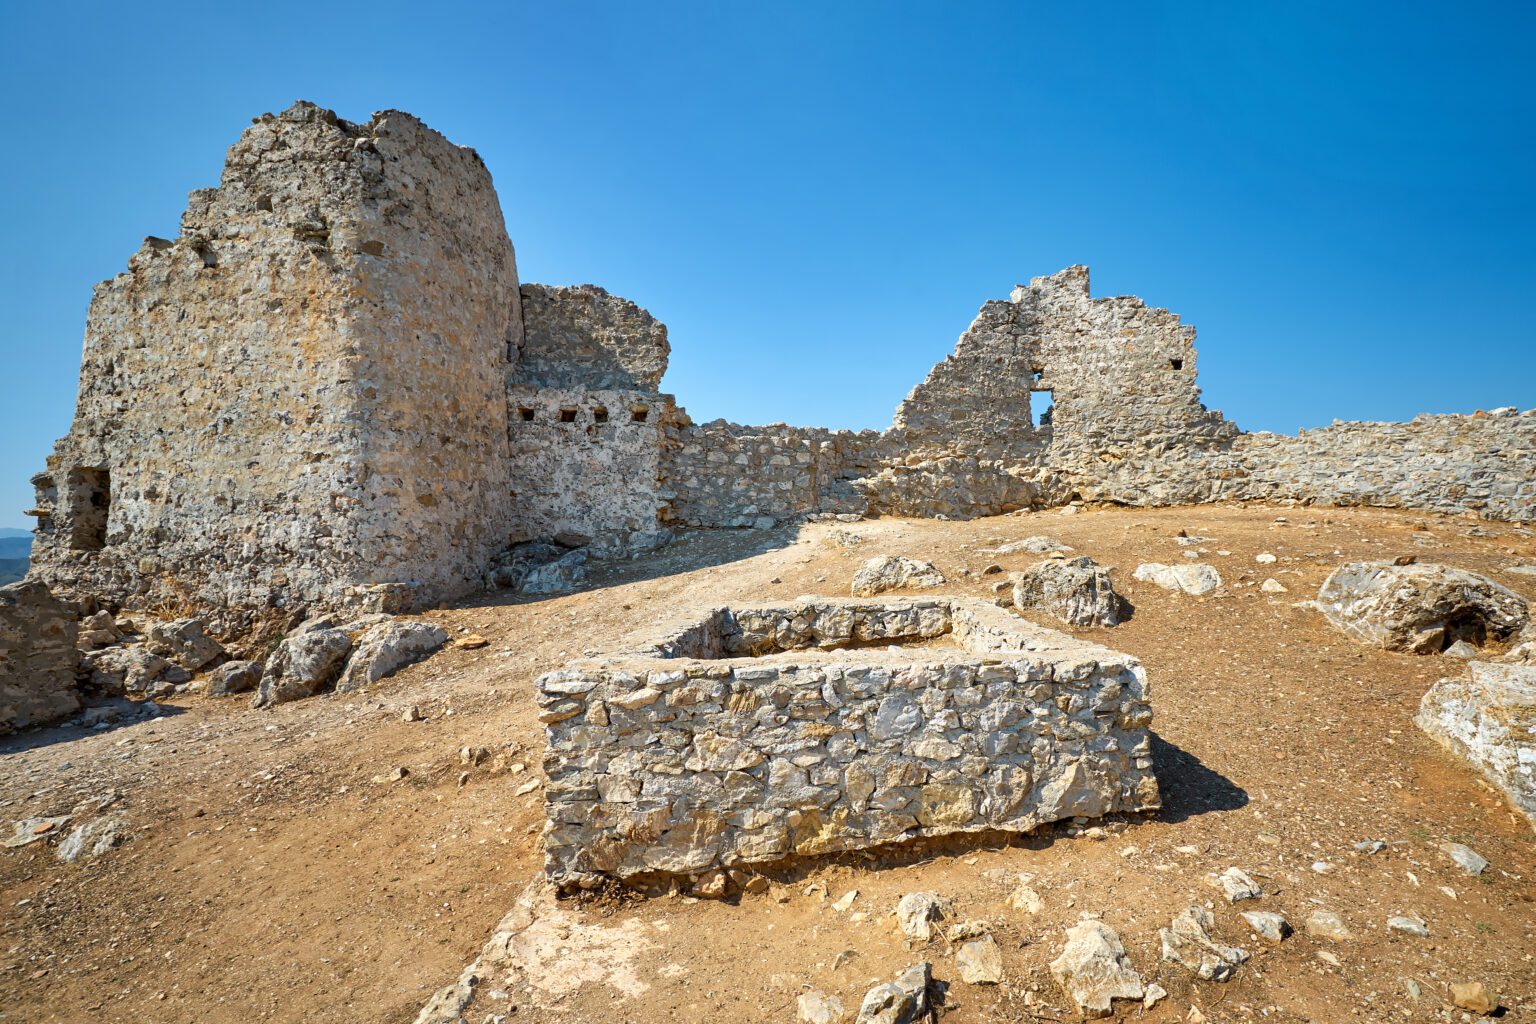 Asklipio Castle